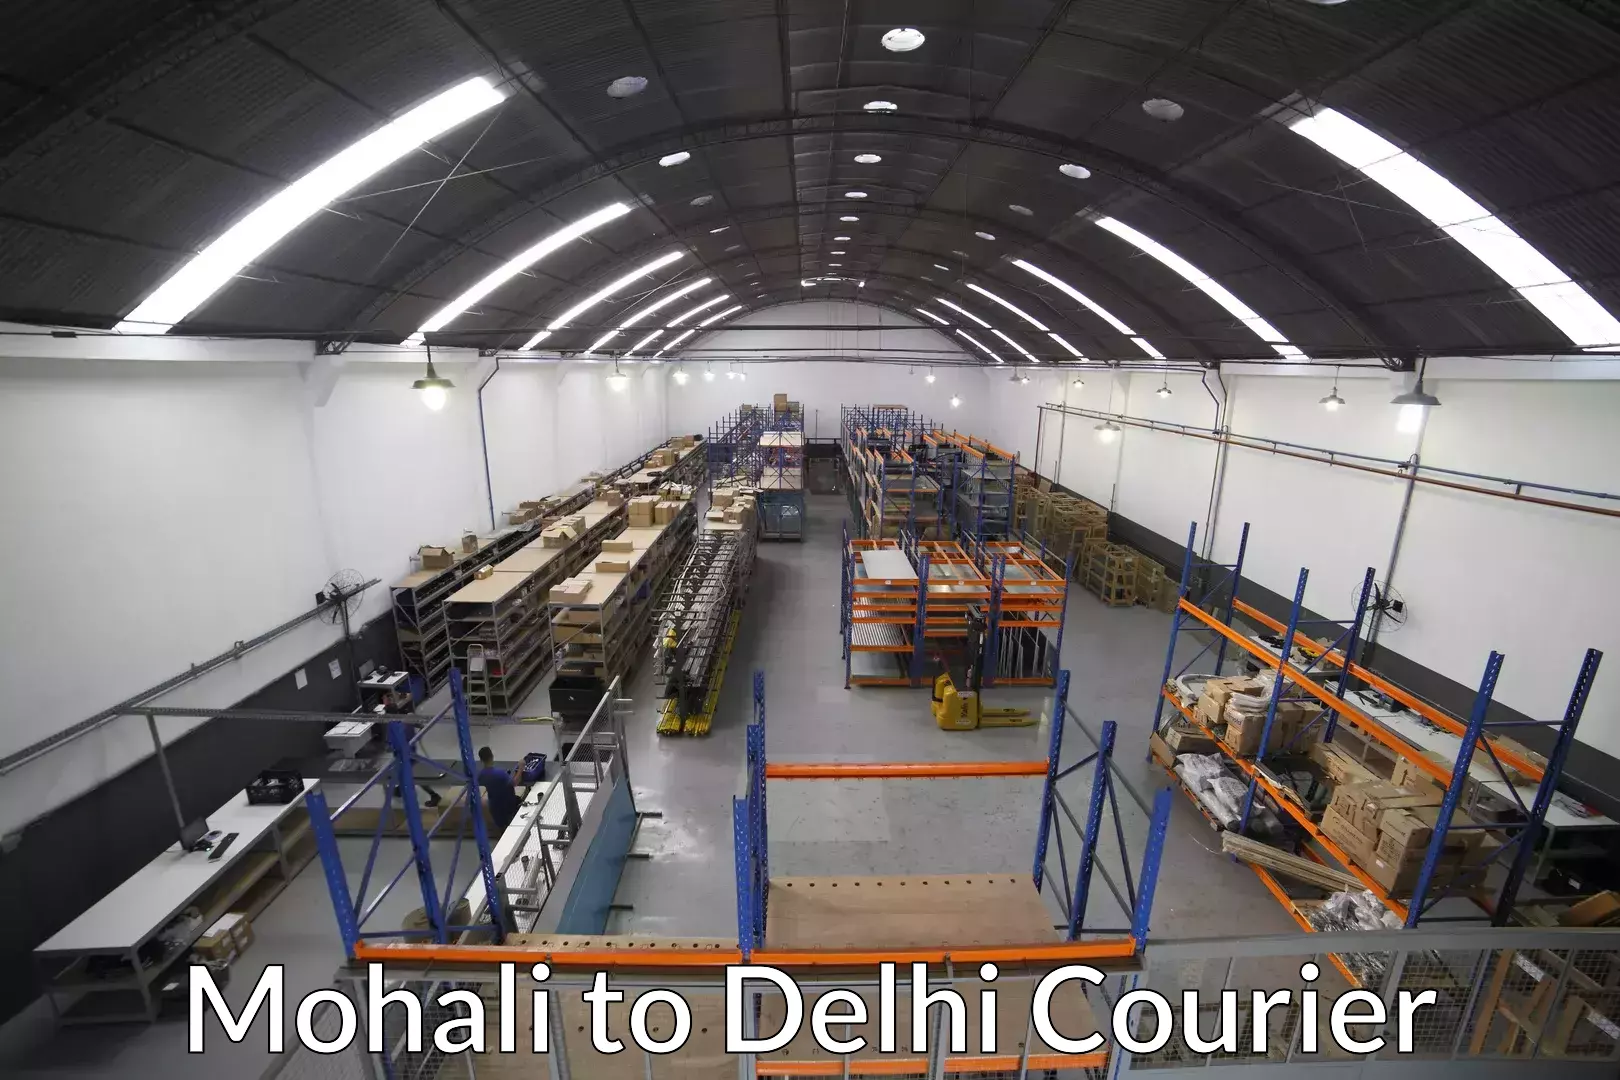 Furniture transport professionals Mohali to Delhi Technological University DTU